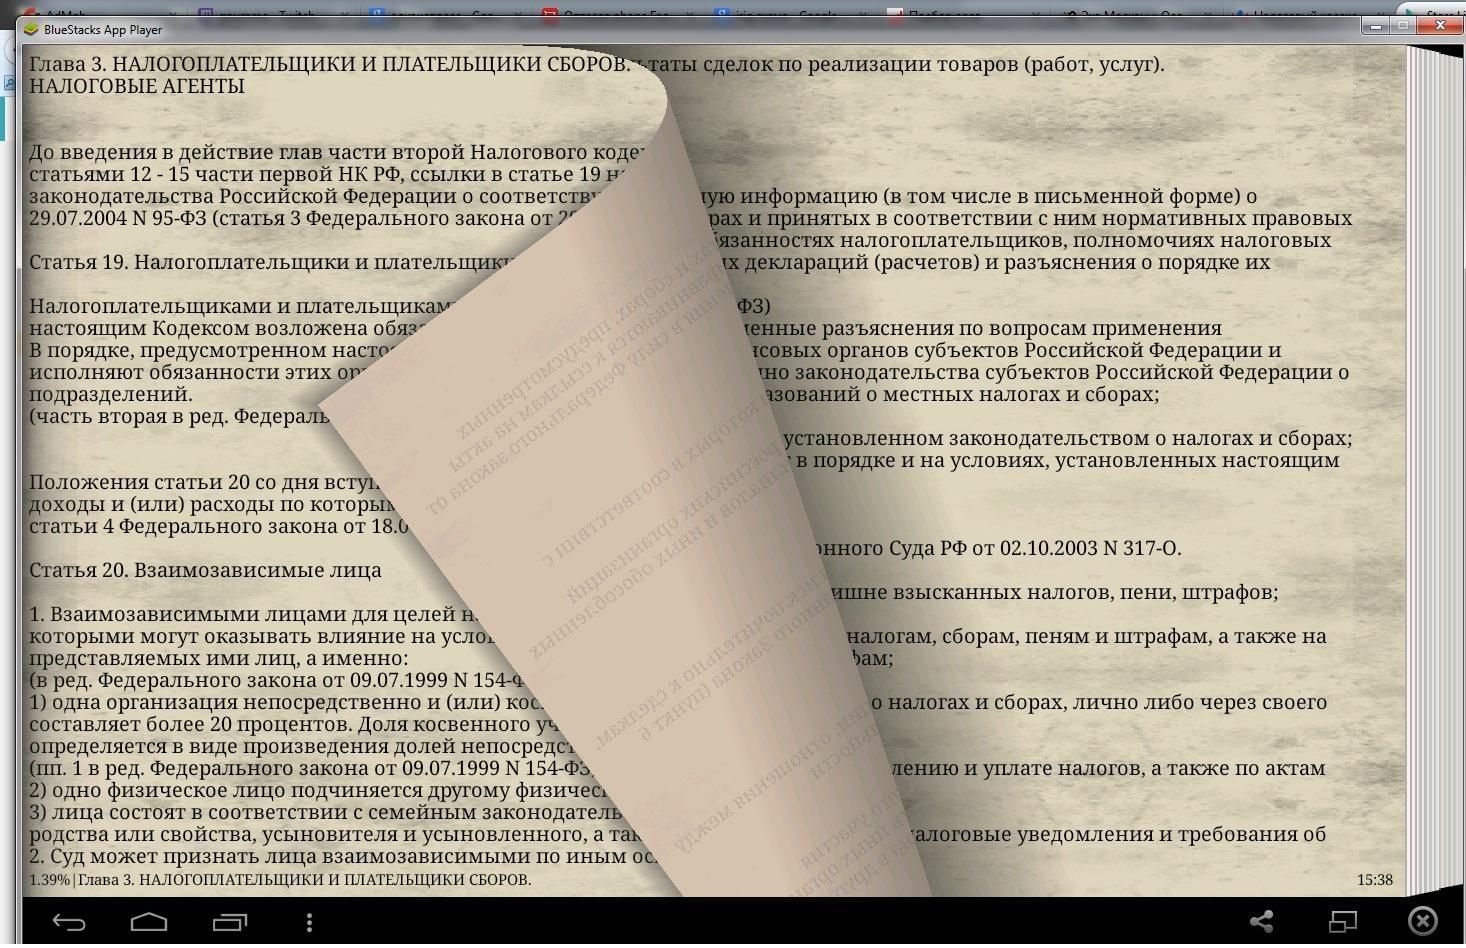 Глава 16 нк рф. Налоговый кодекс Молдовы. Ссылка в литературе на налоговый кодекс.